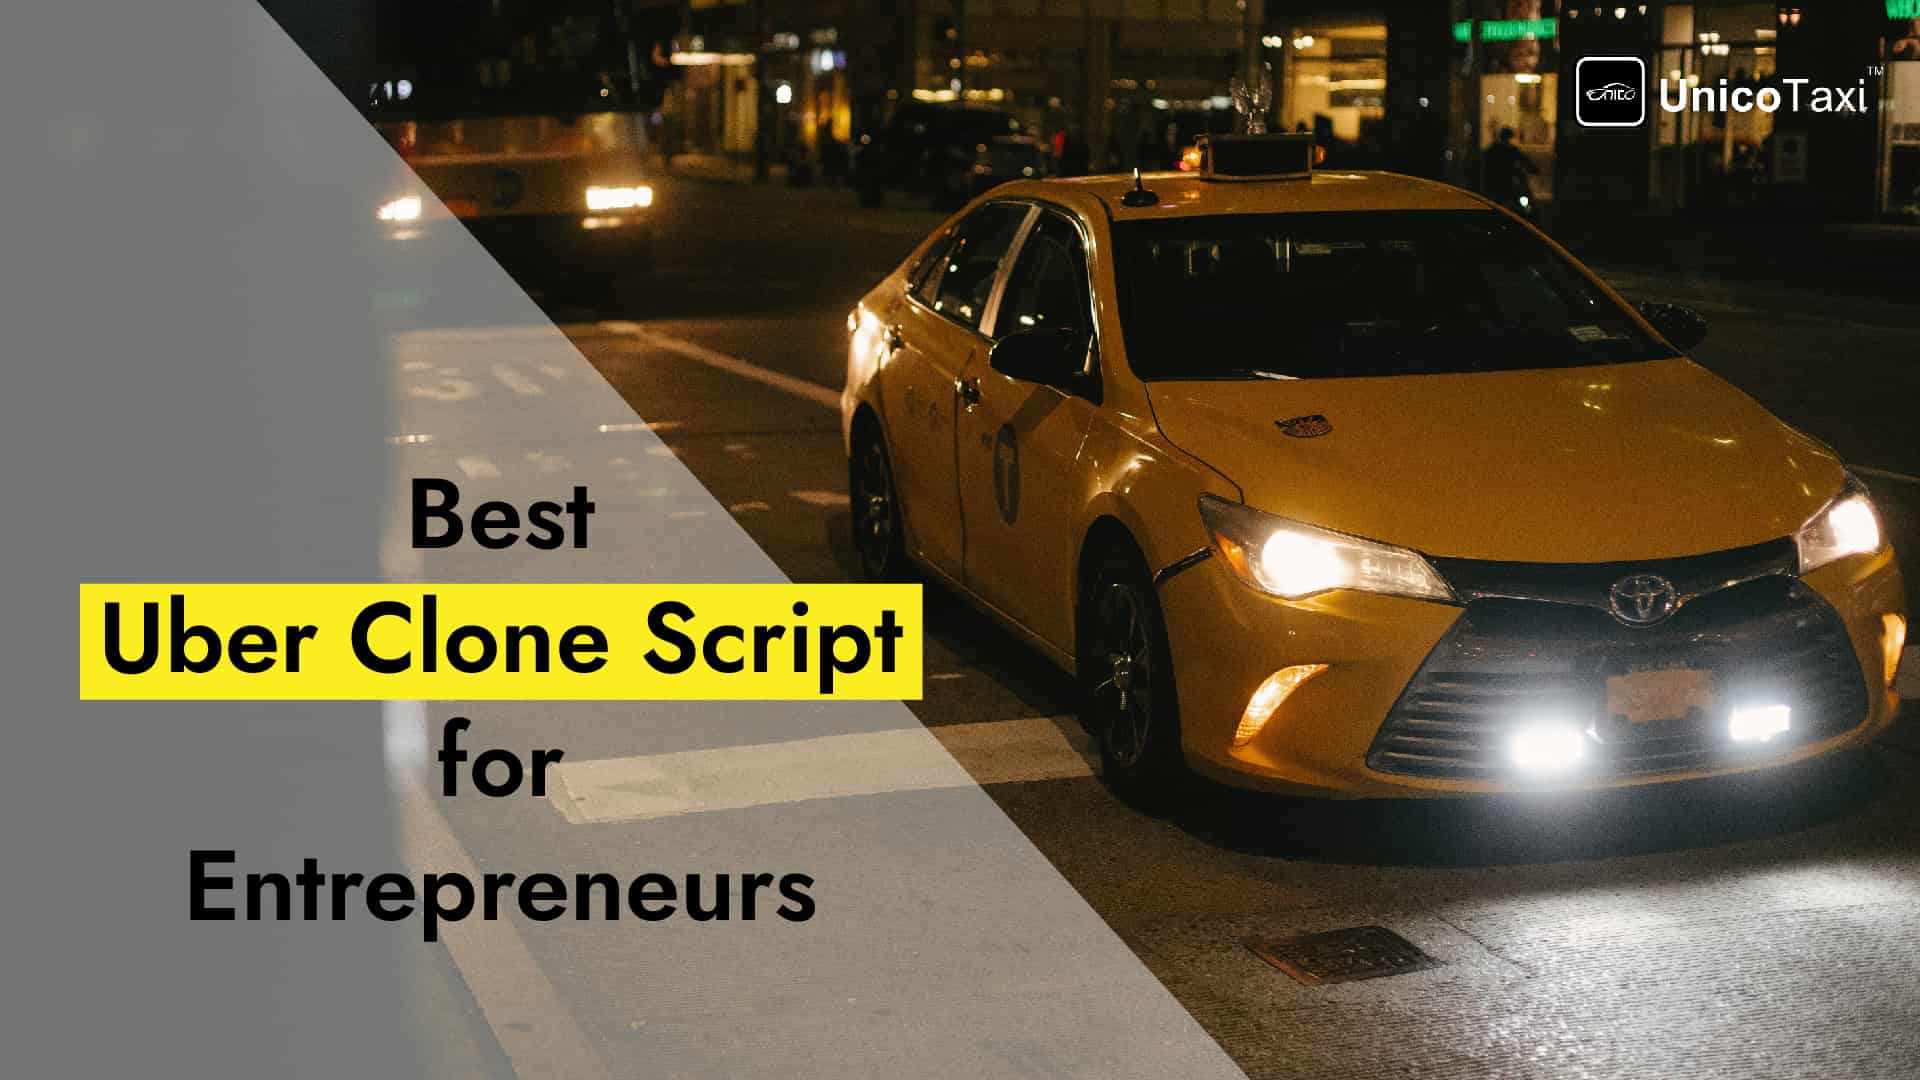 Best Uber Clone Script for Entrepreneurs